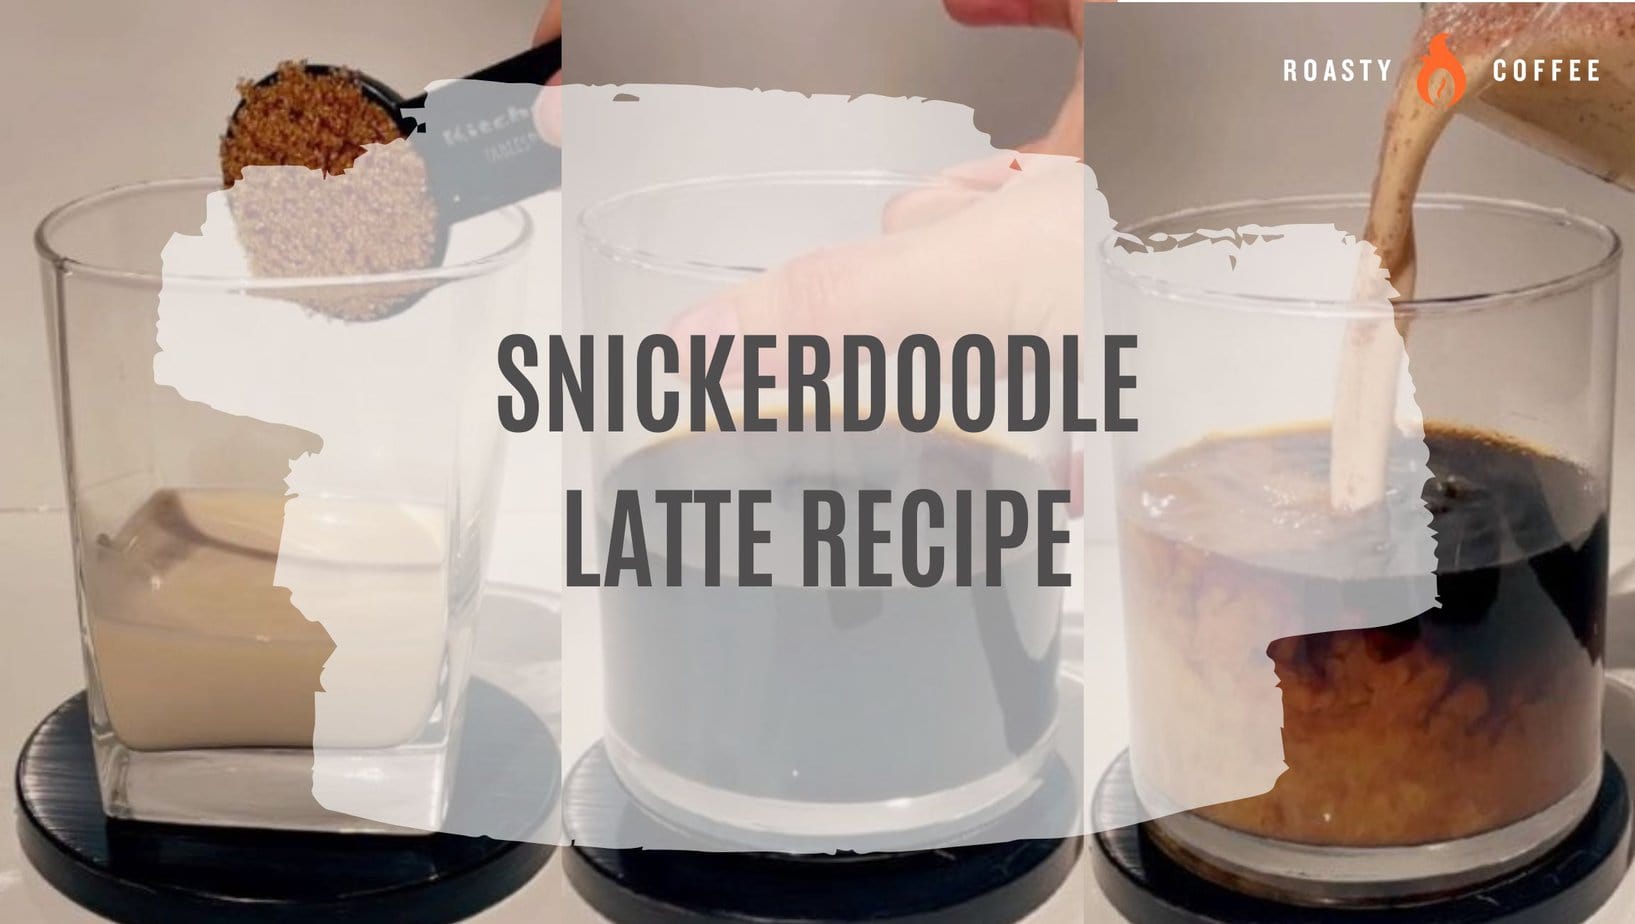 Snickerdoodle Latte Recipe